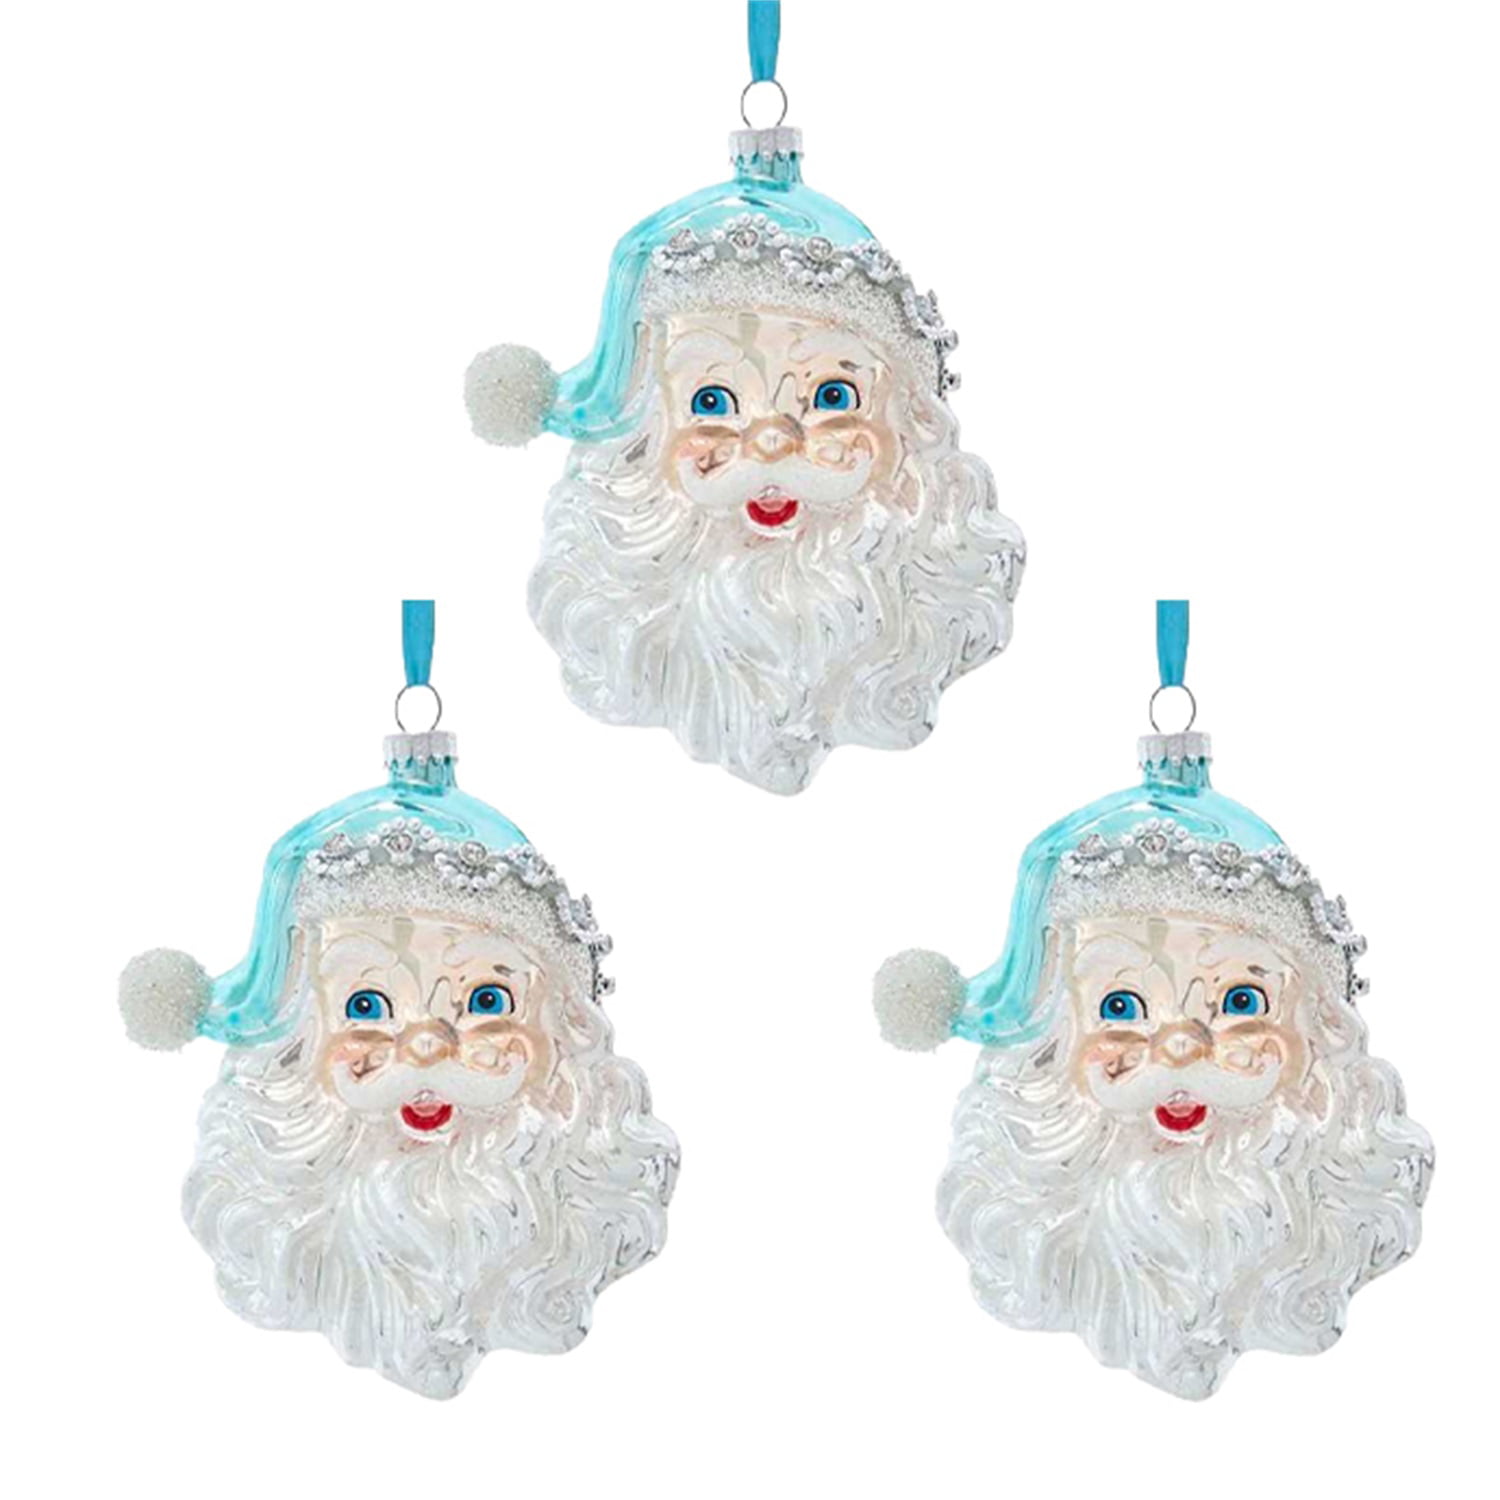 Christmas Tree Ornaments 2020 Santa Wearing Hanging XMAS DIY Decor Creative Gift 